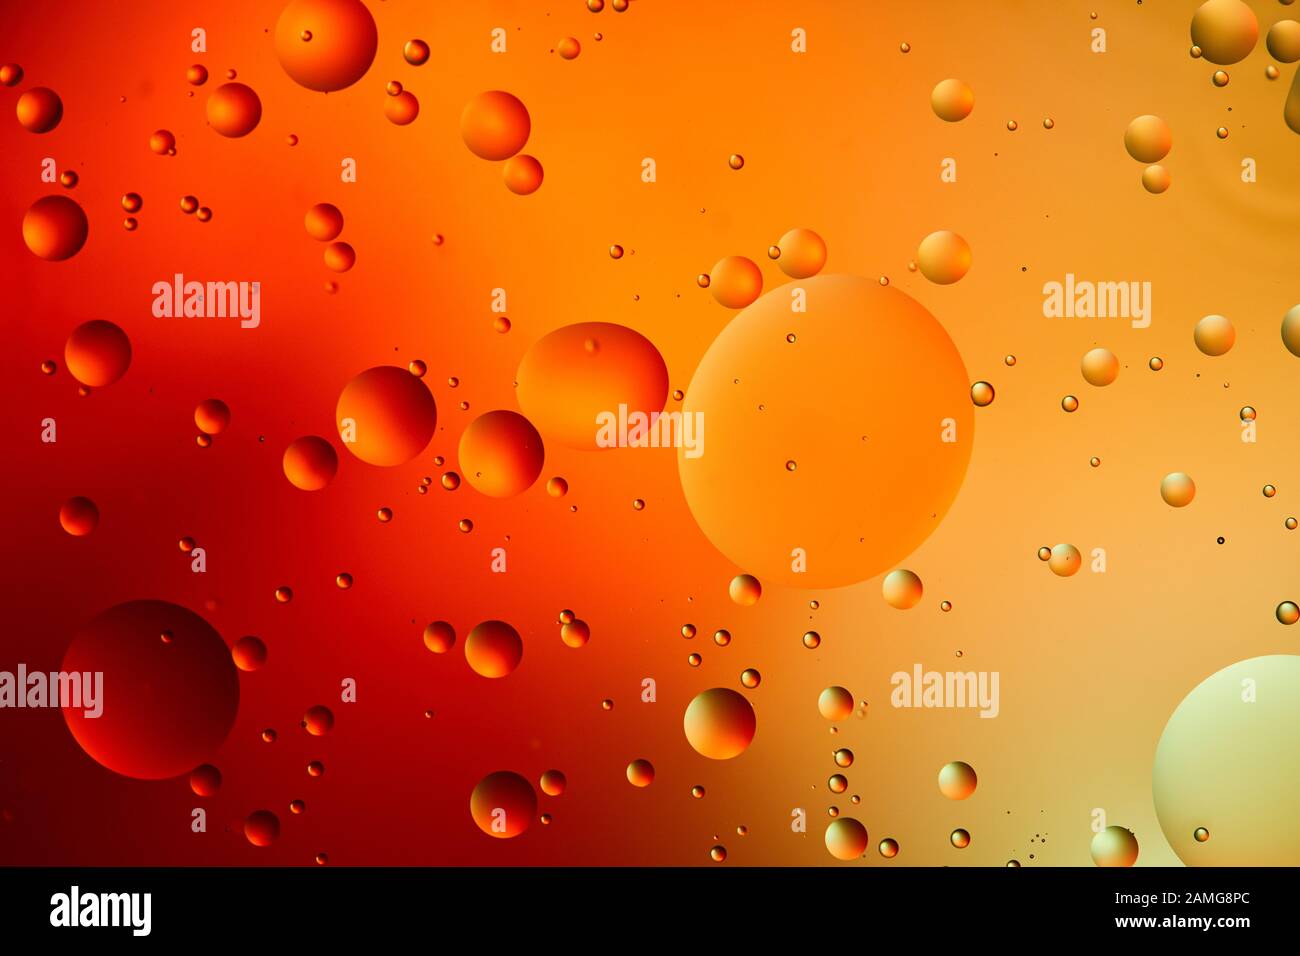 Abstract Orange and Red: Tưởng tượng của bạn được thể hiện trên các tác phẩm nghệ thuật không giới hạn bởi Abstract Orange and Red. Những đường cong, những đốm sáng với tông cam đỏ đậm và vàng cam sẽ mang lại sự độc đáo và sự nổi bật cho bức tranh của bạn.